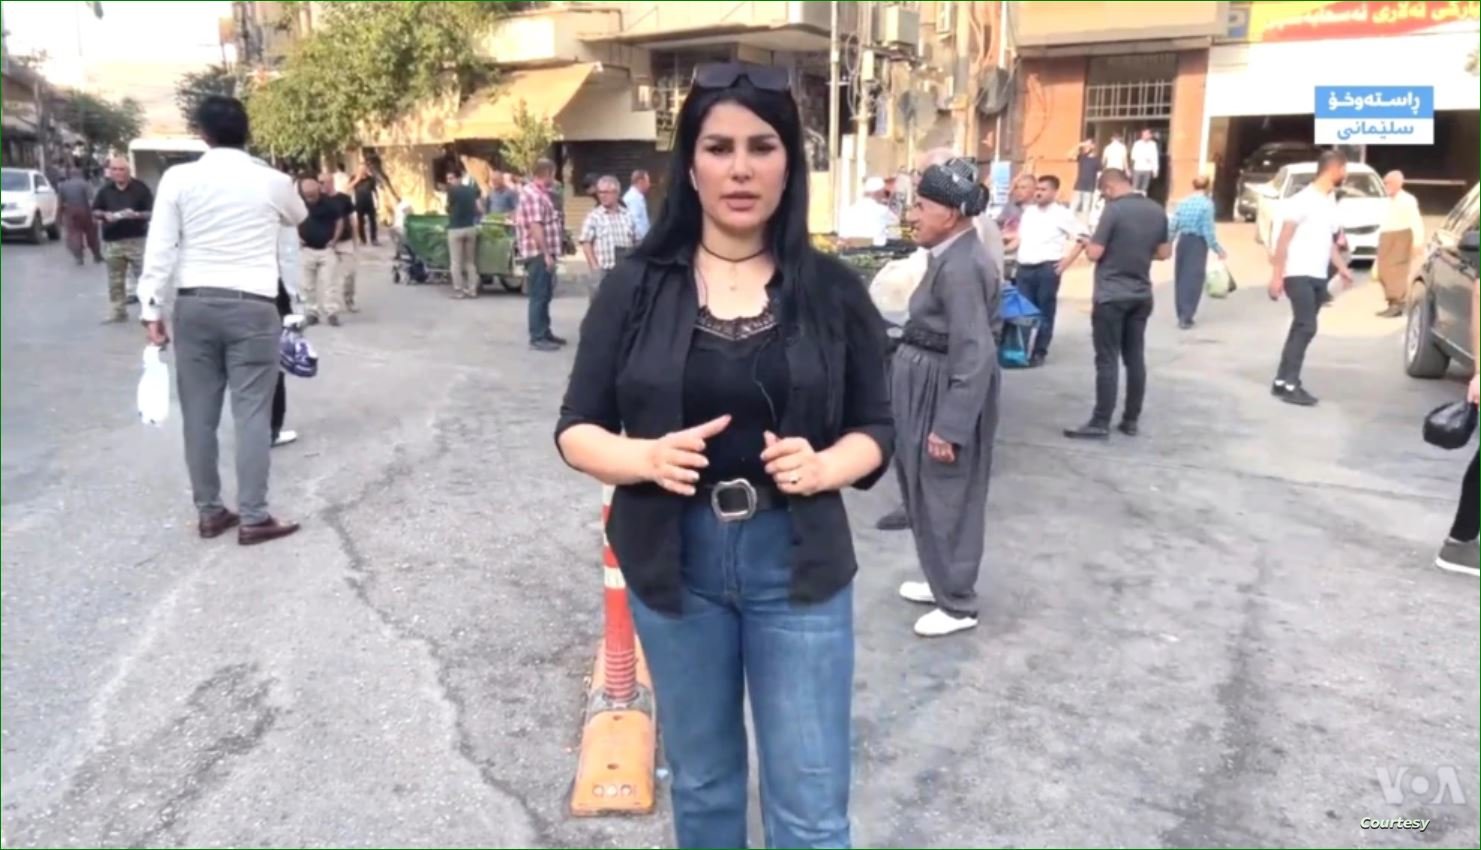 "صوت أمريكا" تندد باعتقال صحفييها خلال احتجاجات السليمانية في إقليم كردستان